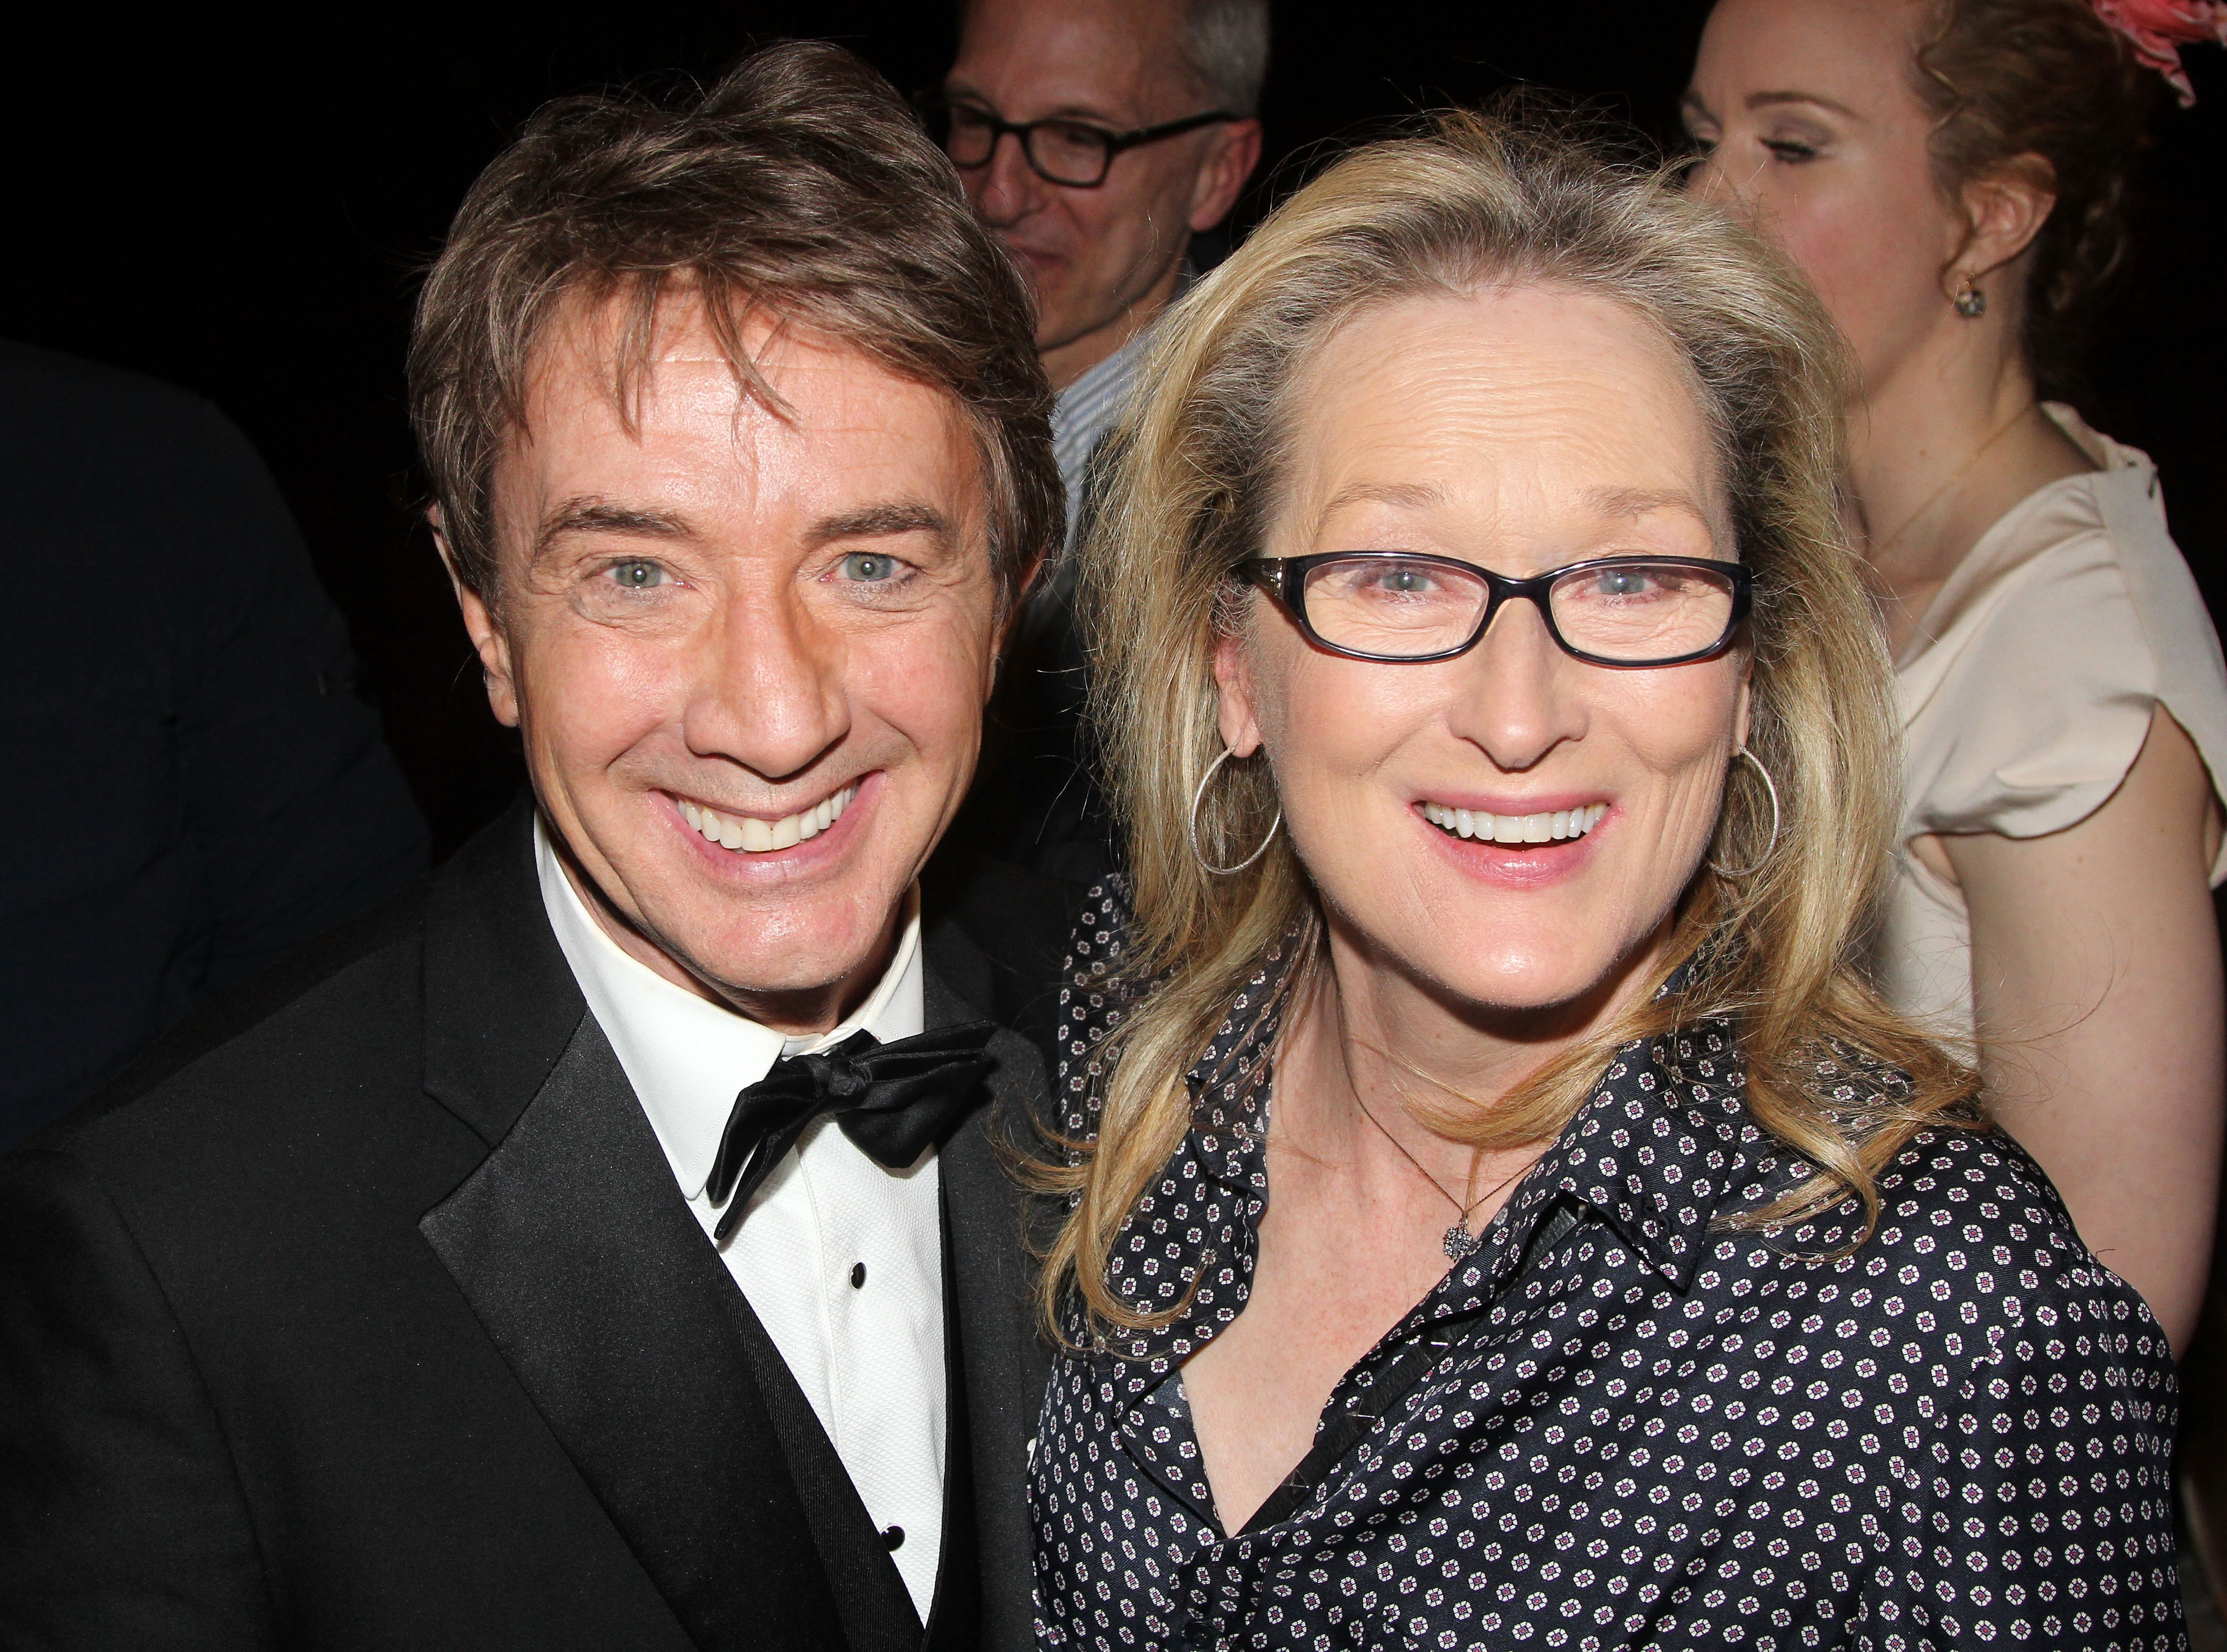 Martin Short et Meryl Streep posent dans les coulisses de la pièce à succès "It's Only a Play" à Broadway au Jacobs Theater à New York, le 3 février 2015. | Source : Getty Images